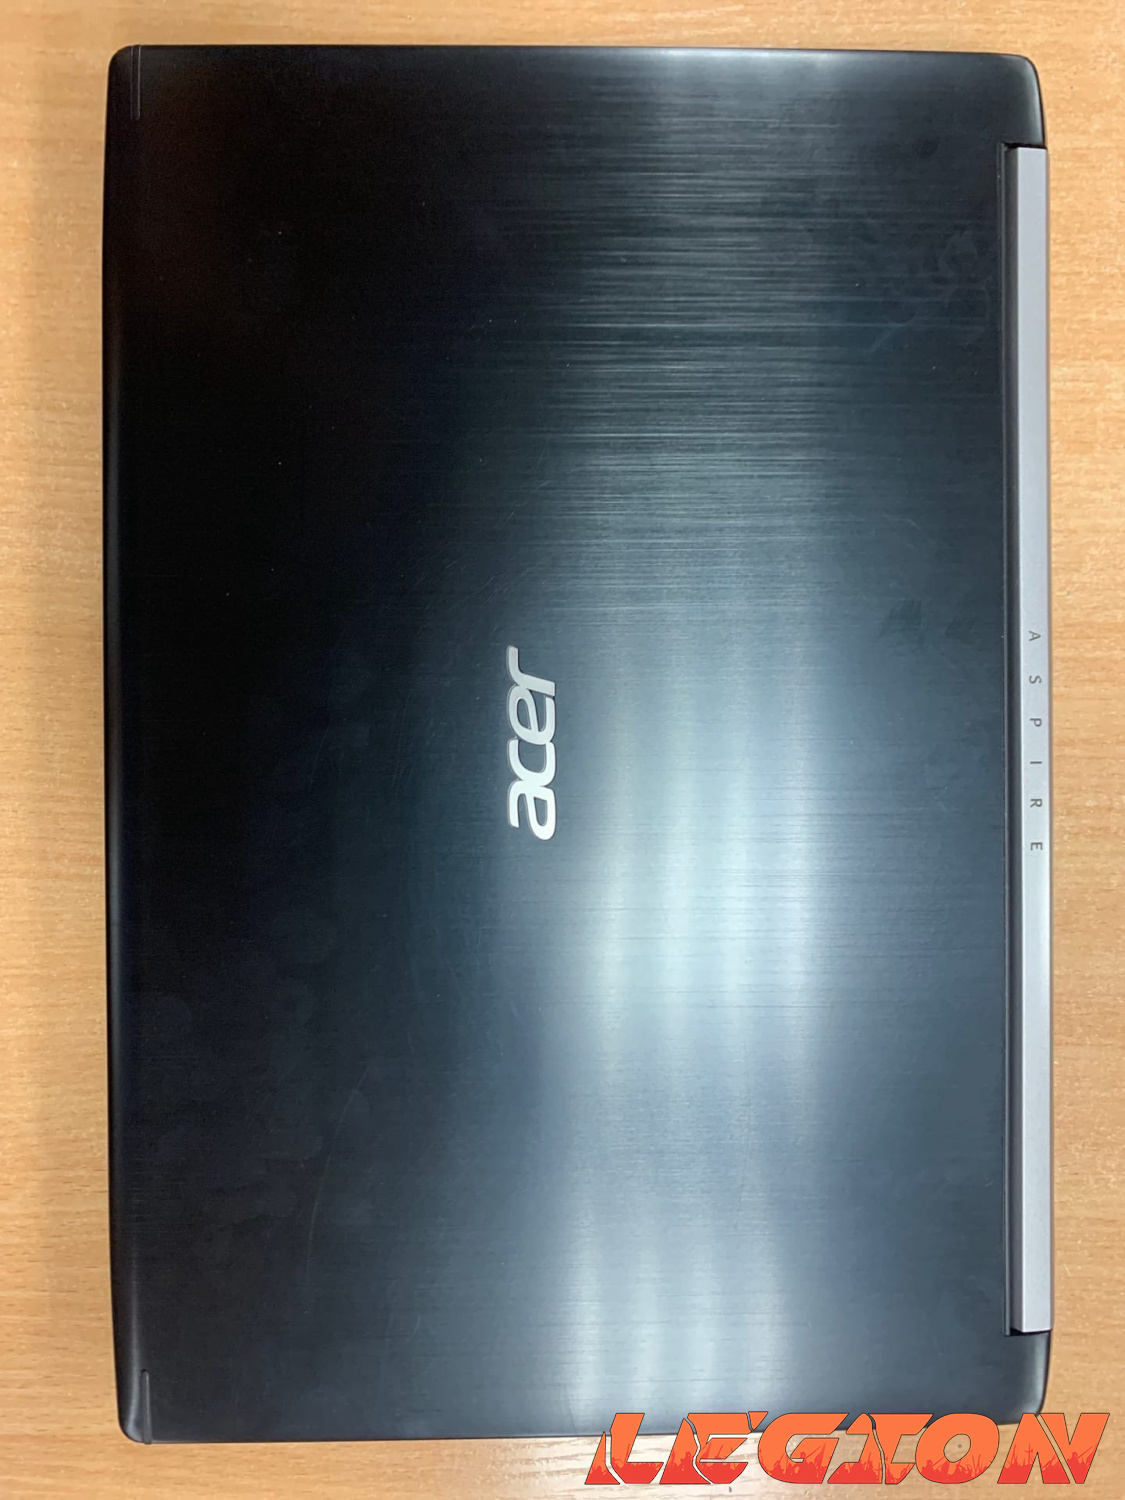 Acer/i5 7300/8GB/GTX1050/248GB SSD/15.6 IPS FHD